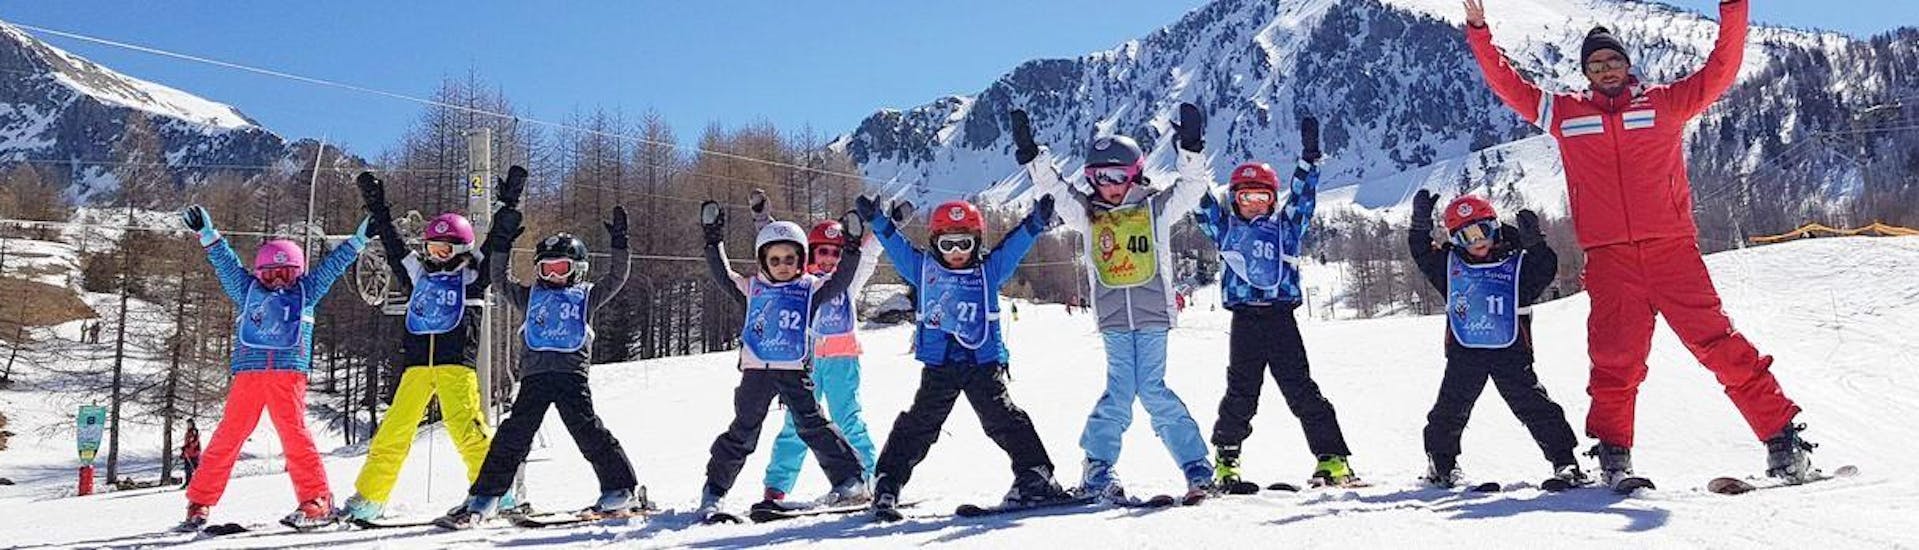 Clases de esquí para niños a partir de 7 años para todos los niveles.